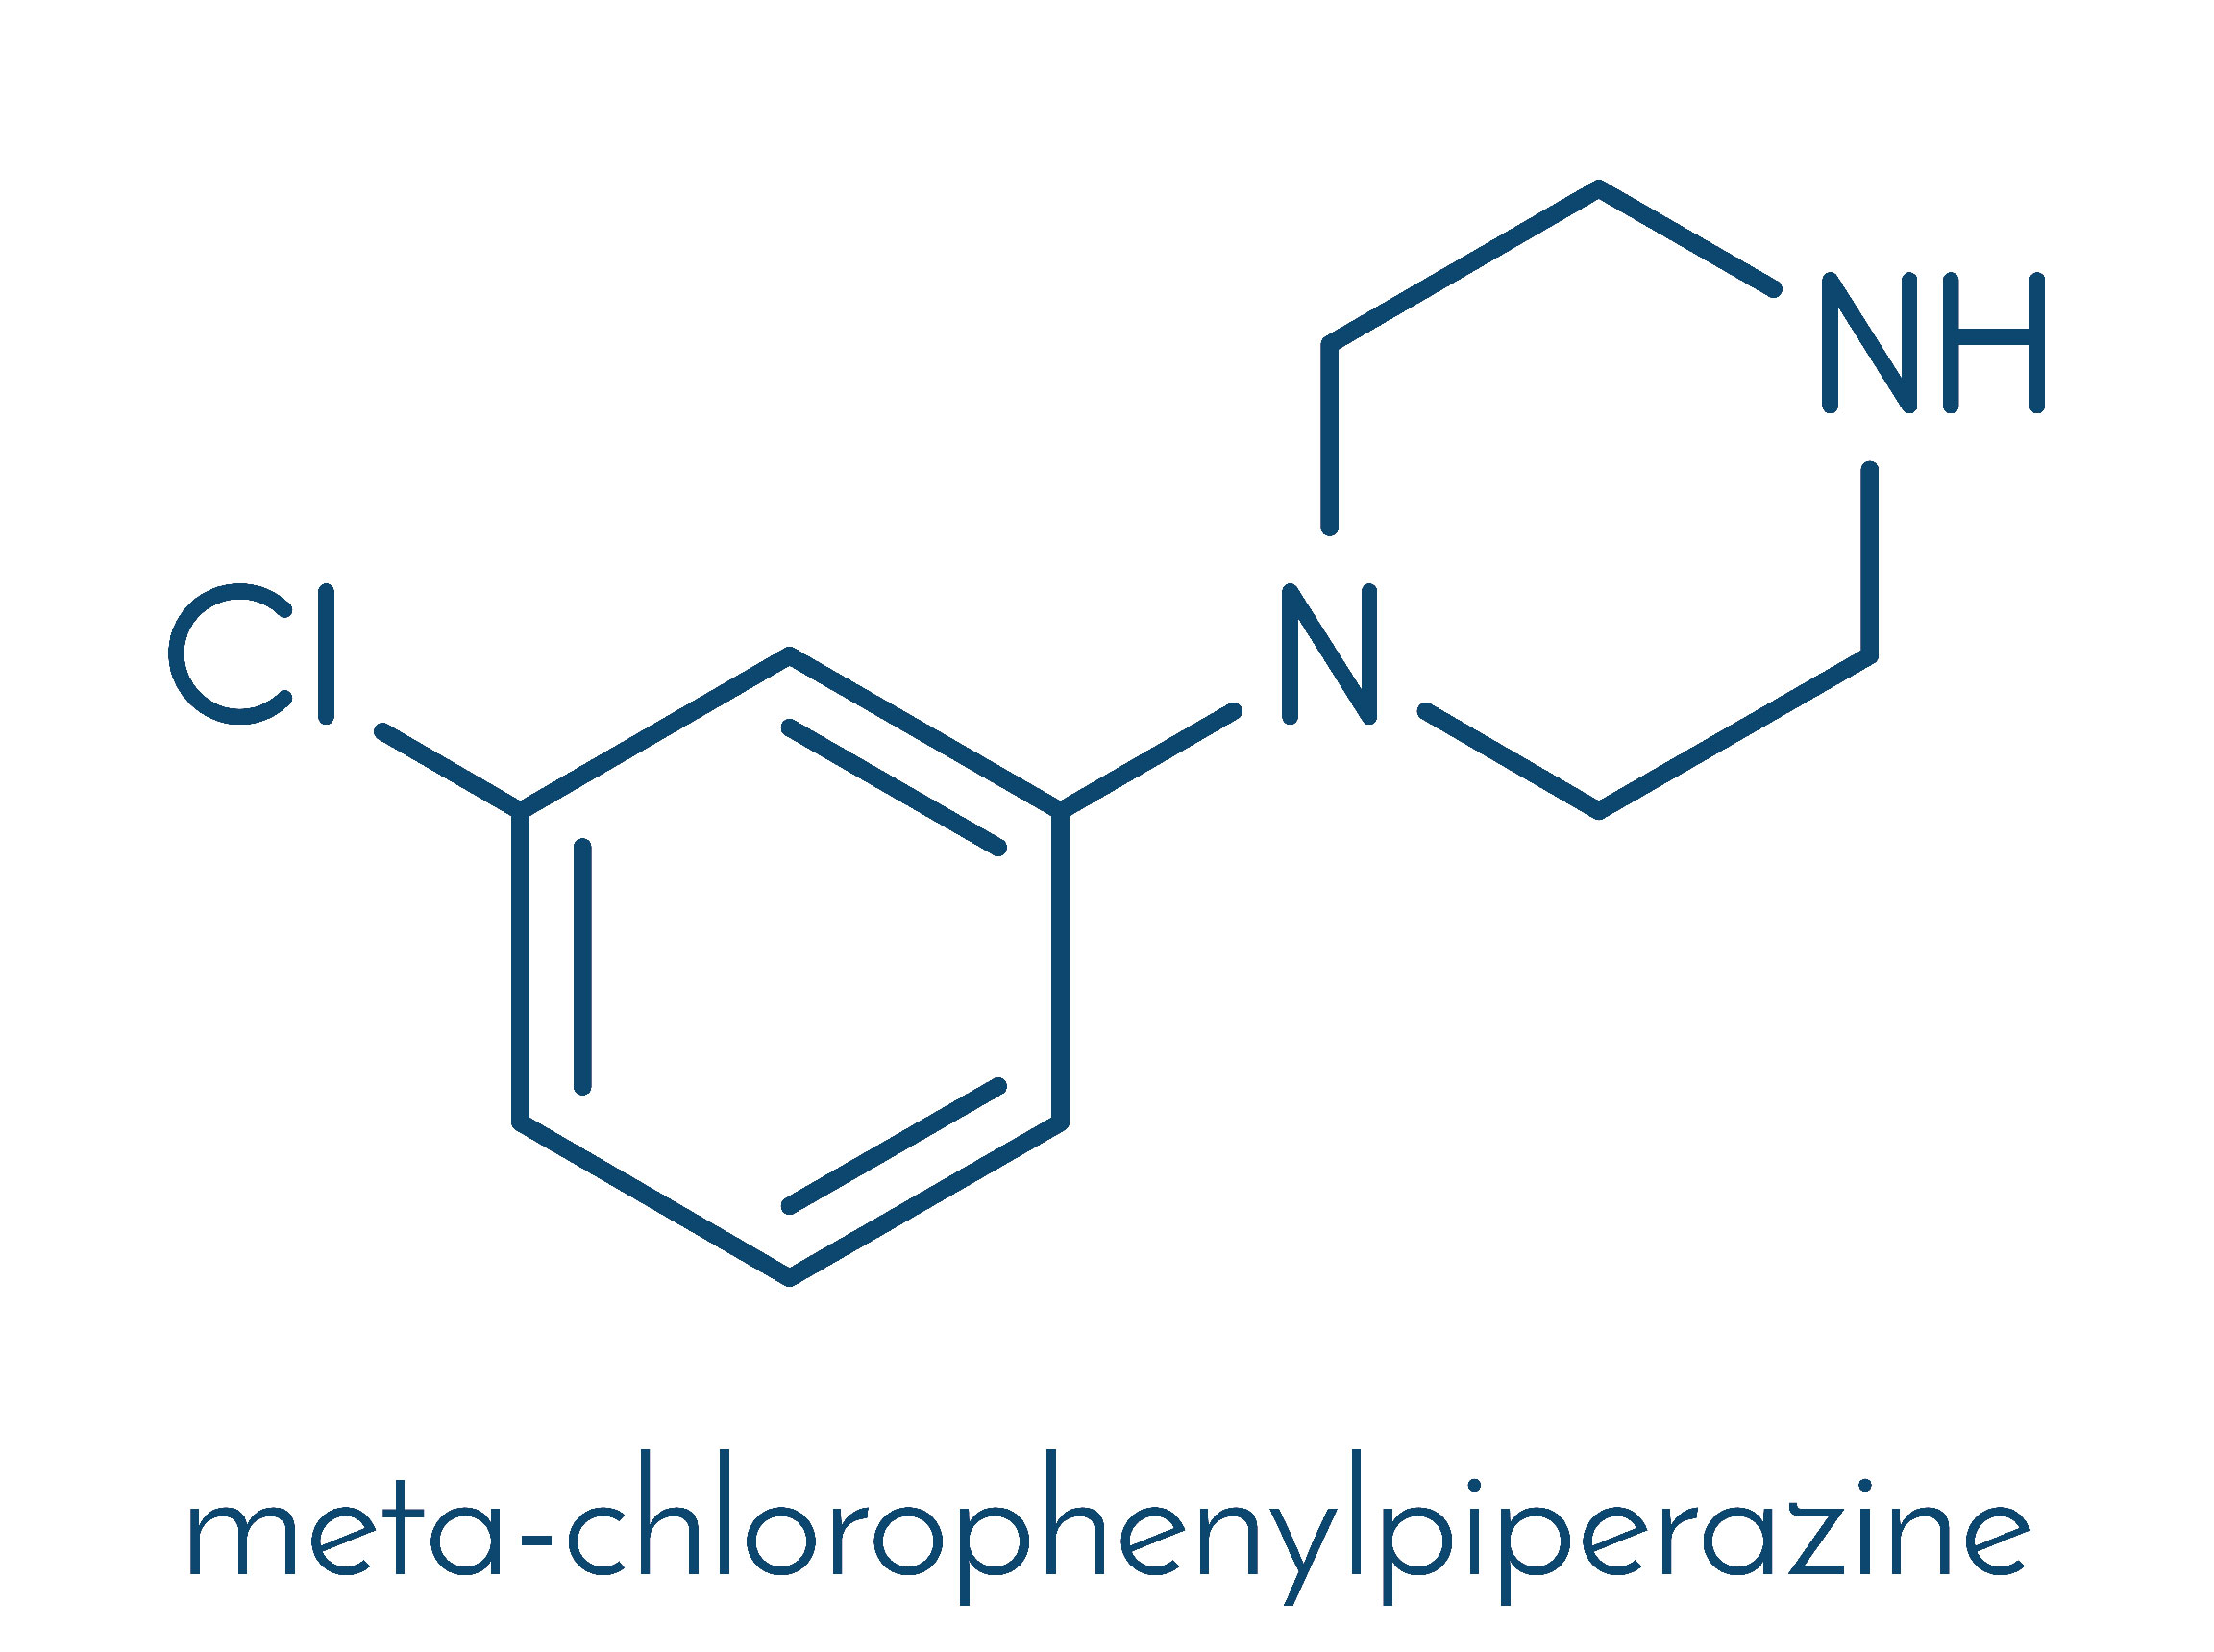 Meta-chlorophenylpiperazine